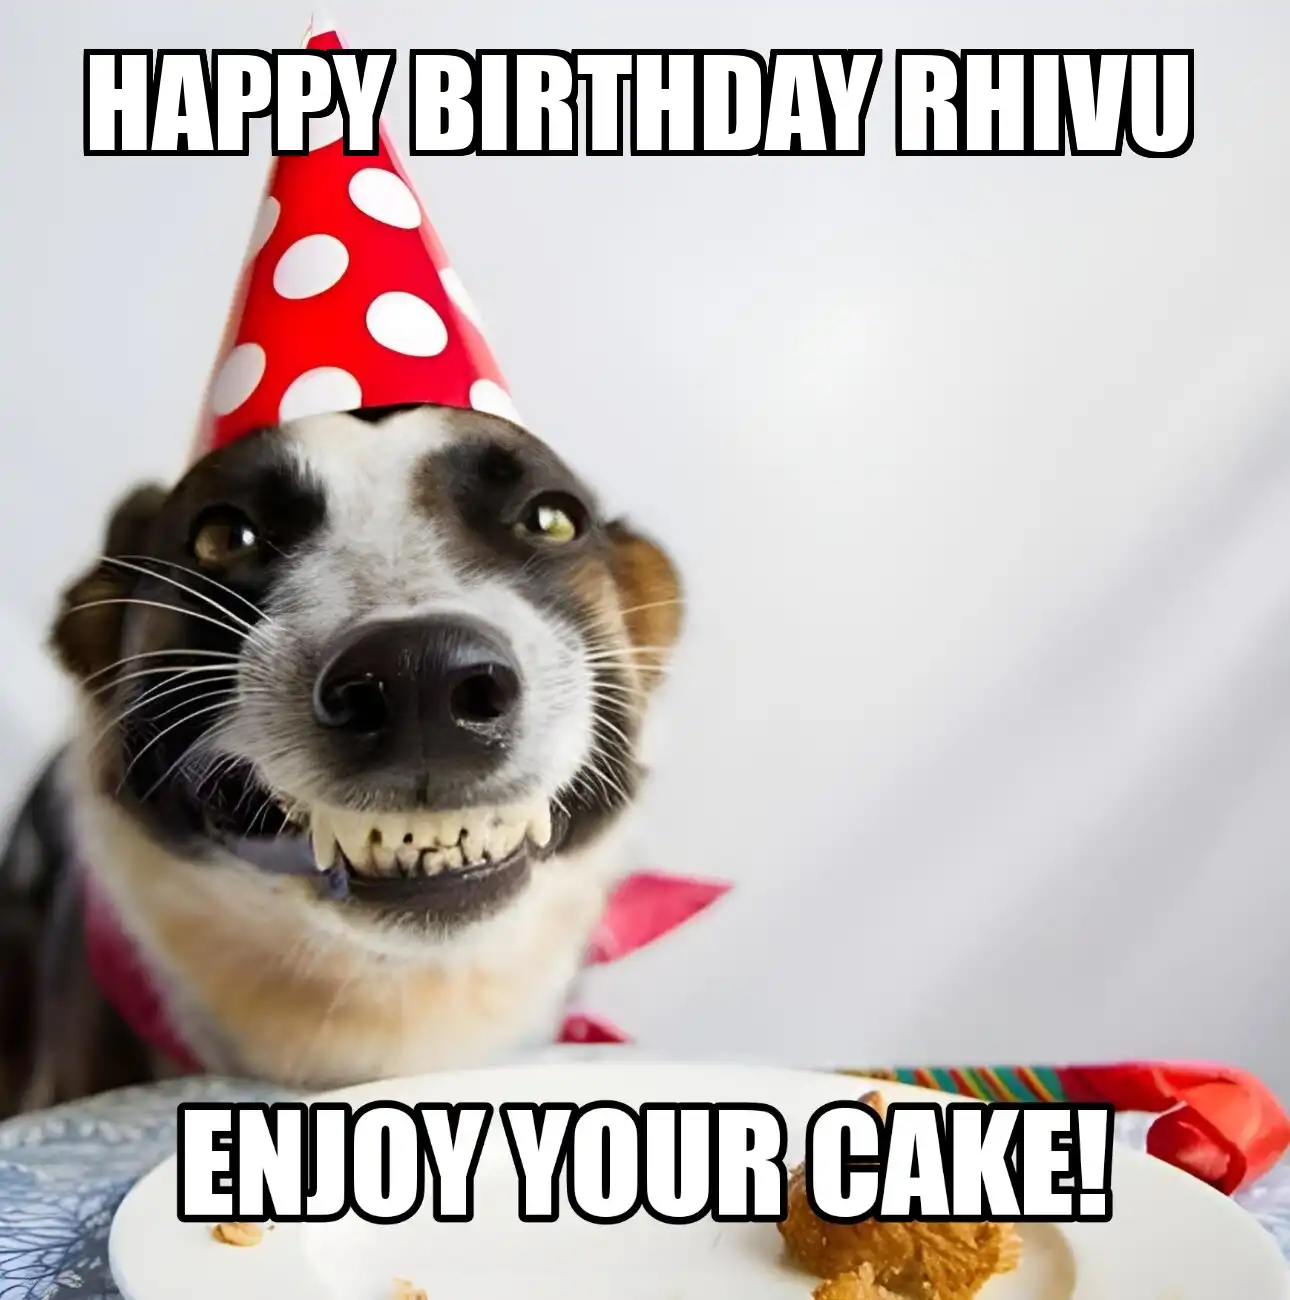 Happy Birthday Rhivu Enjoy Your Cake Dog Meme